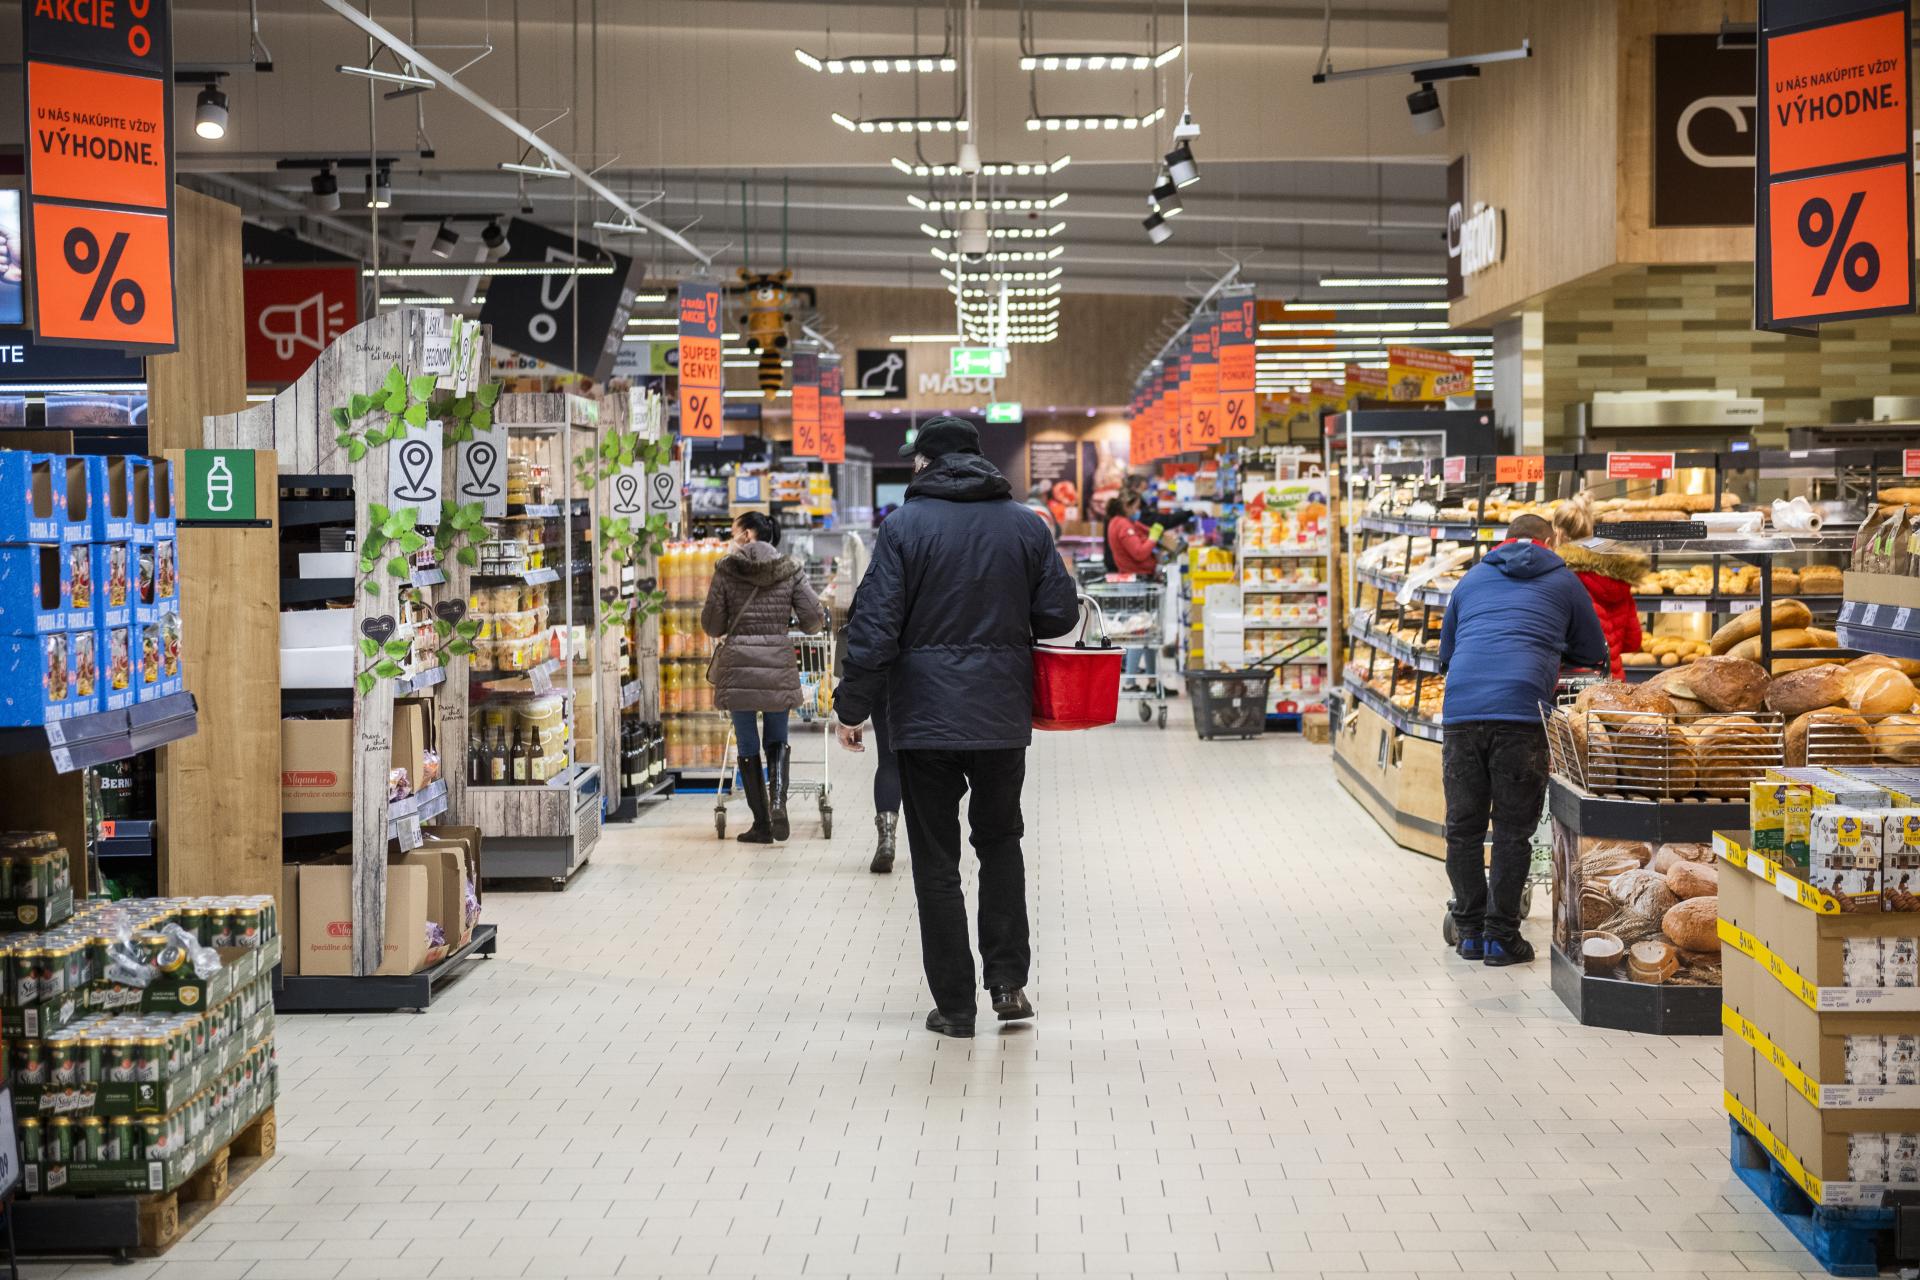 Výsledky sú horšie než sme čakali, povedal minister Nekula po kontrole cien potravín v Česku